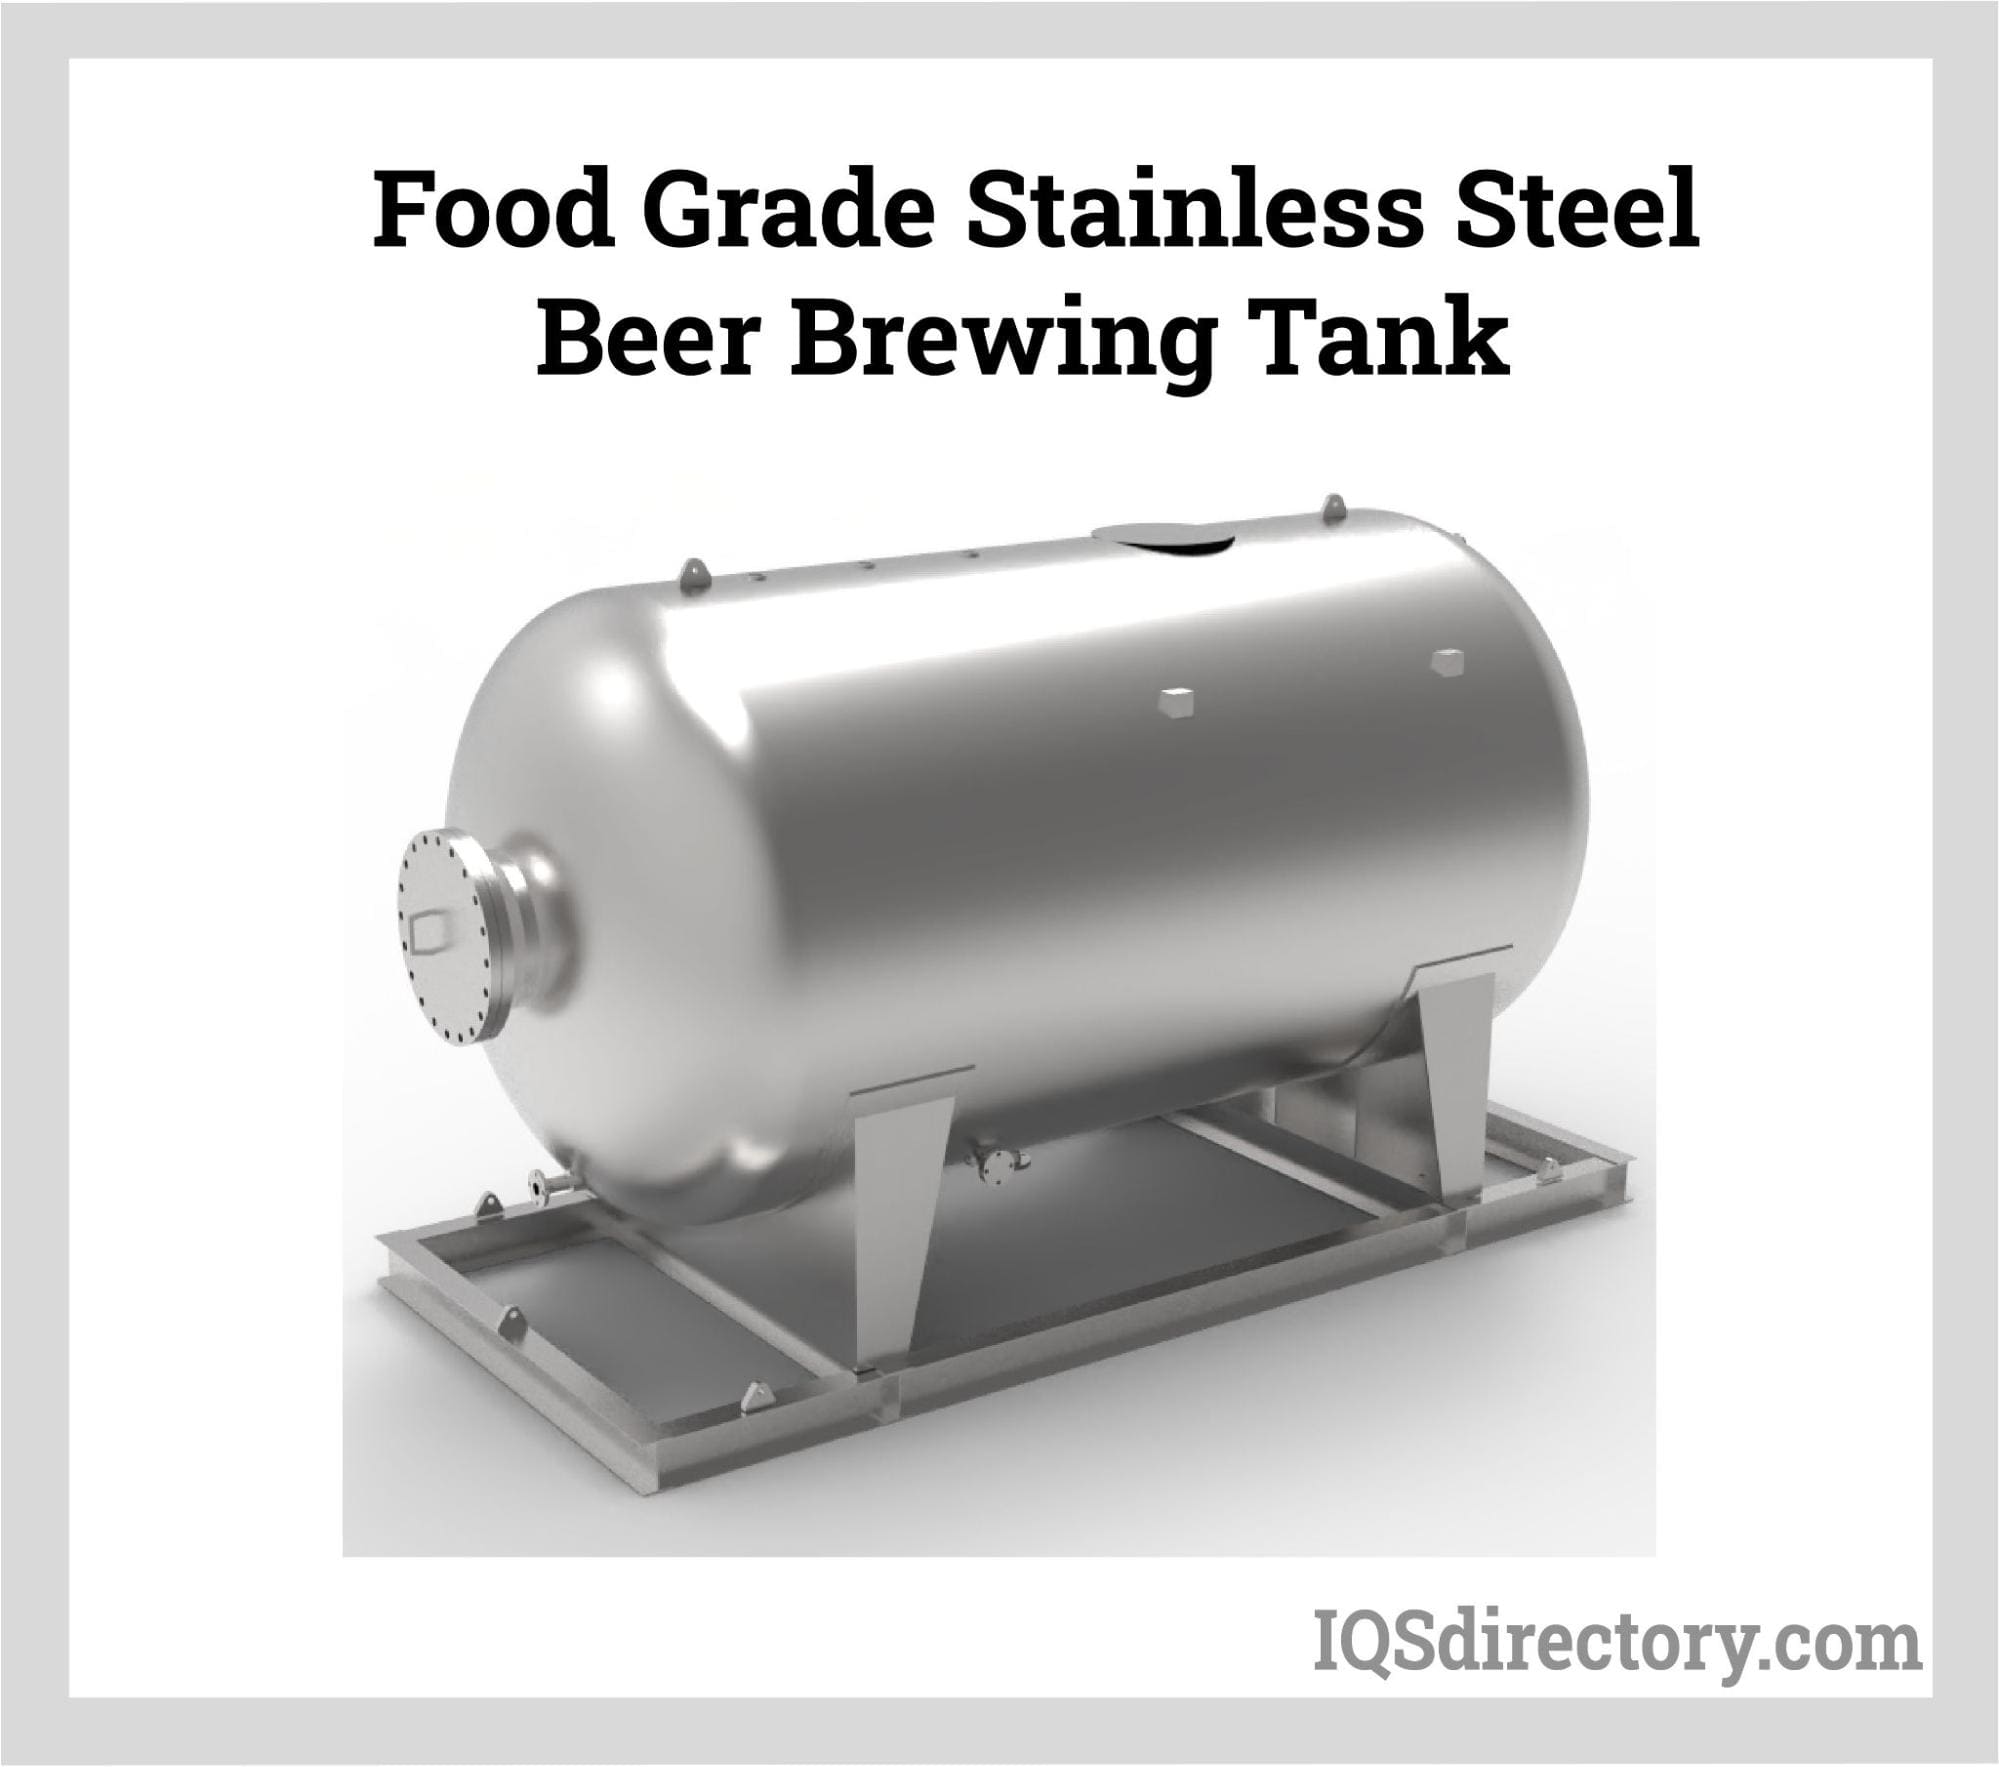 Food Grade Stainless Steel Beer Brewing Tanks